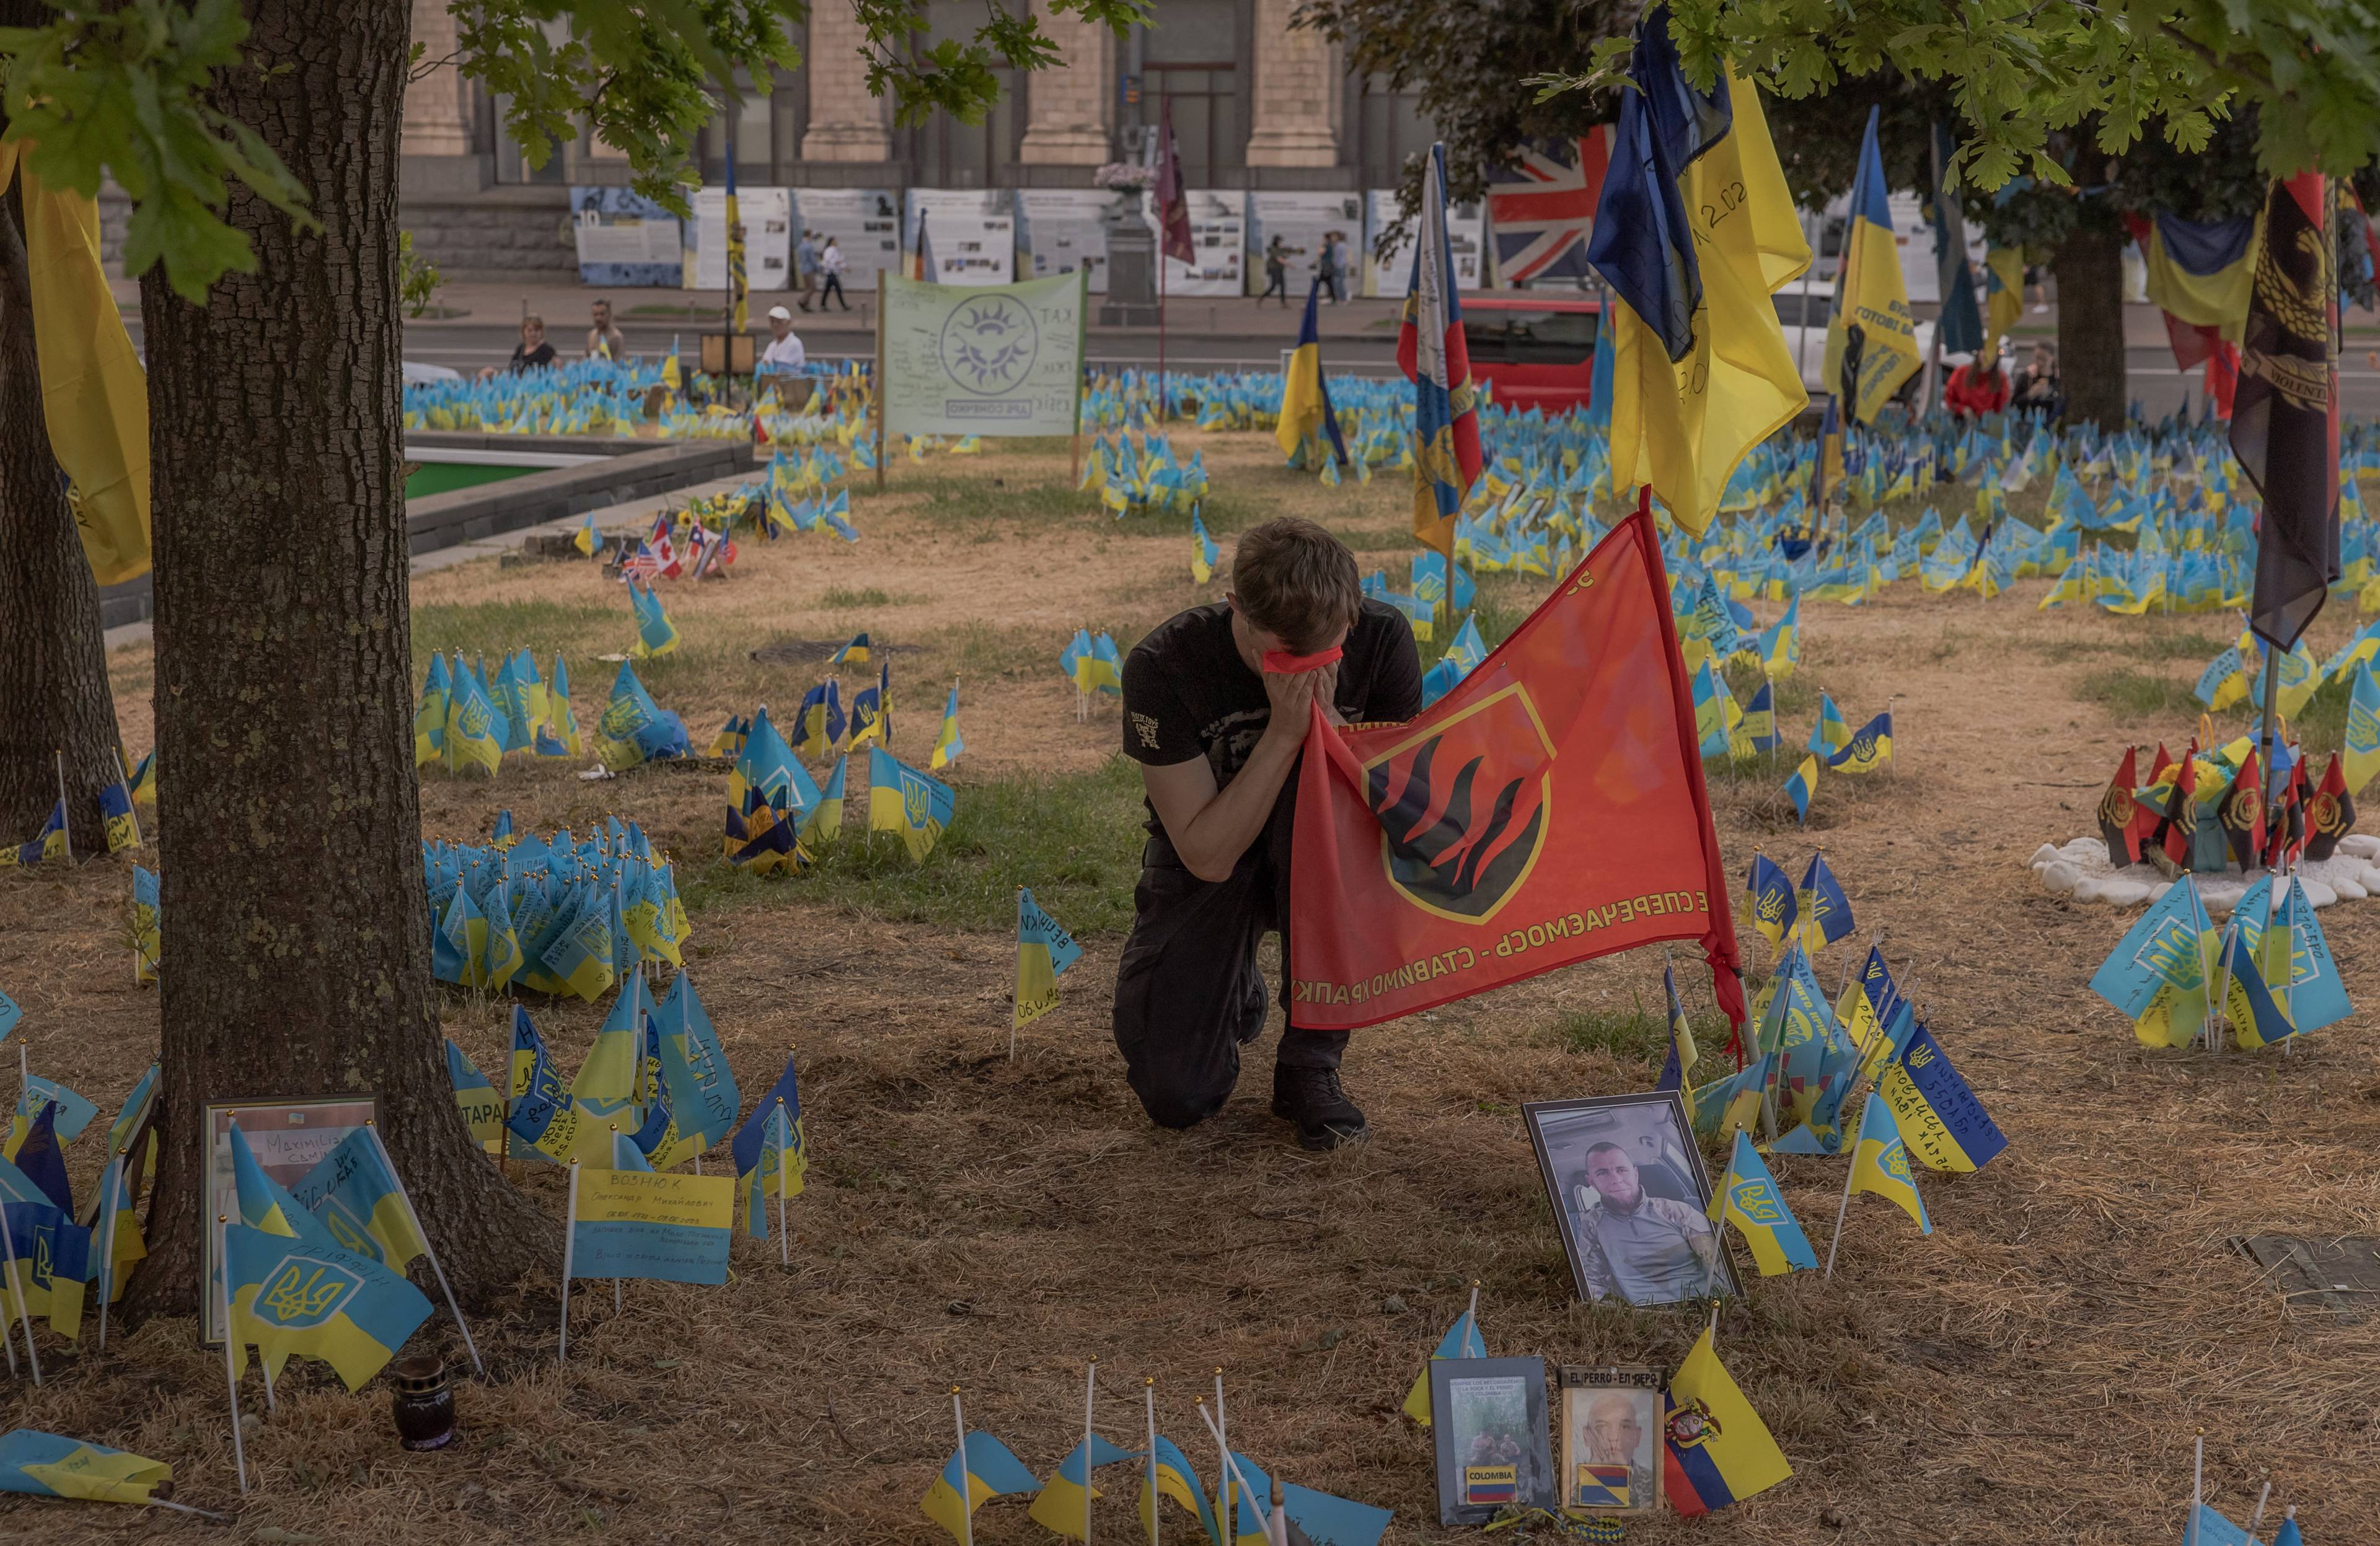 żołnierz klęczy i całuje flagę brygady pośród zatkniętych w ziemię flag ukraińskich